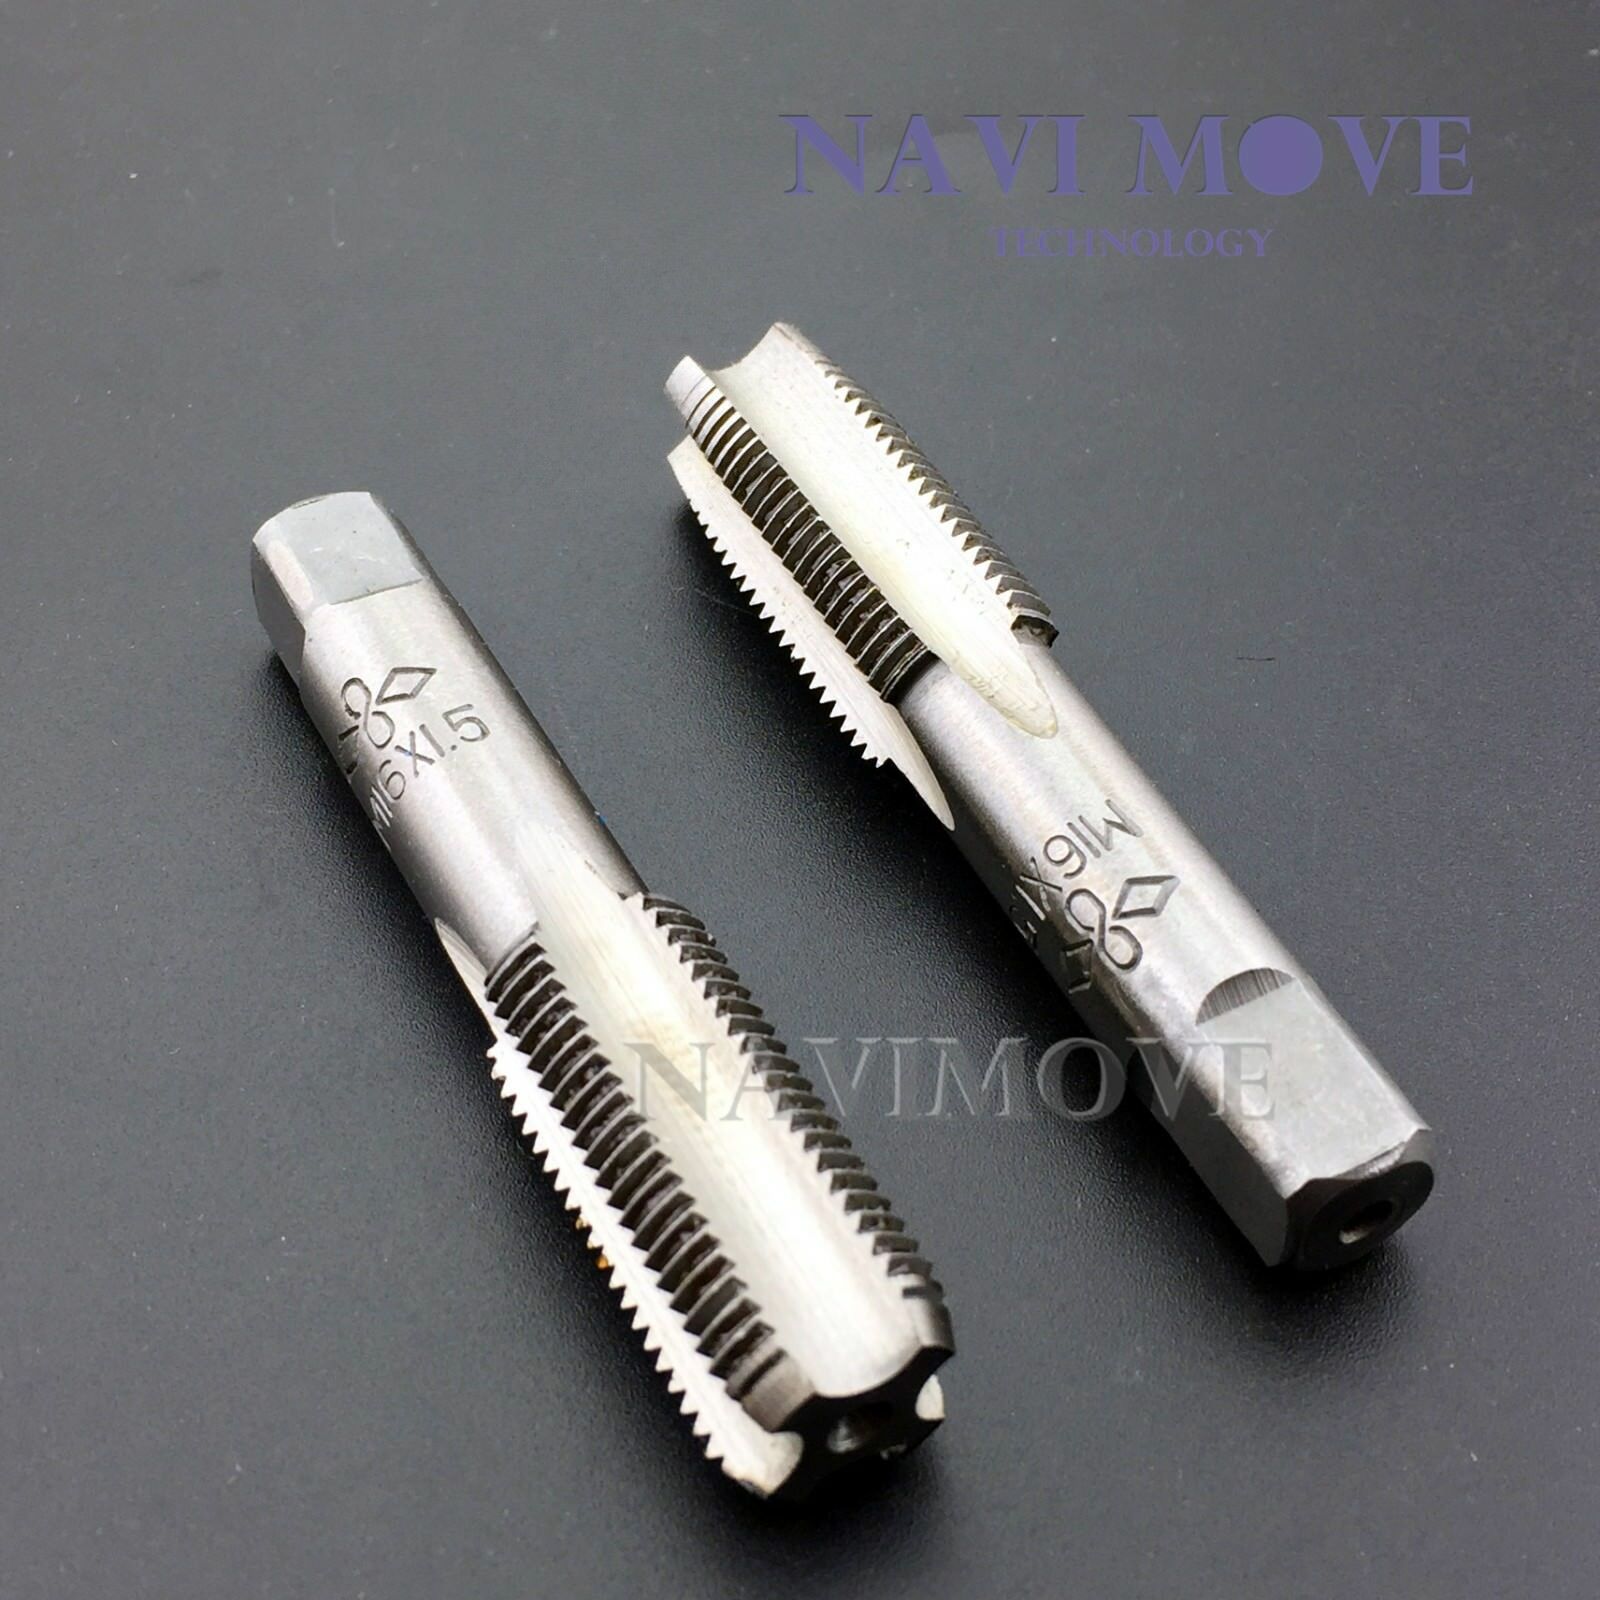 New Hss 16mmx1.5 Metric Taper & Plug Tap Right Hand Thread M16x1.5mm Pitch Usa